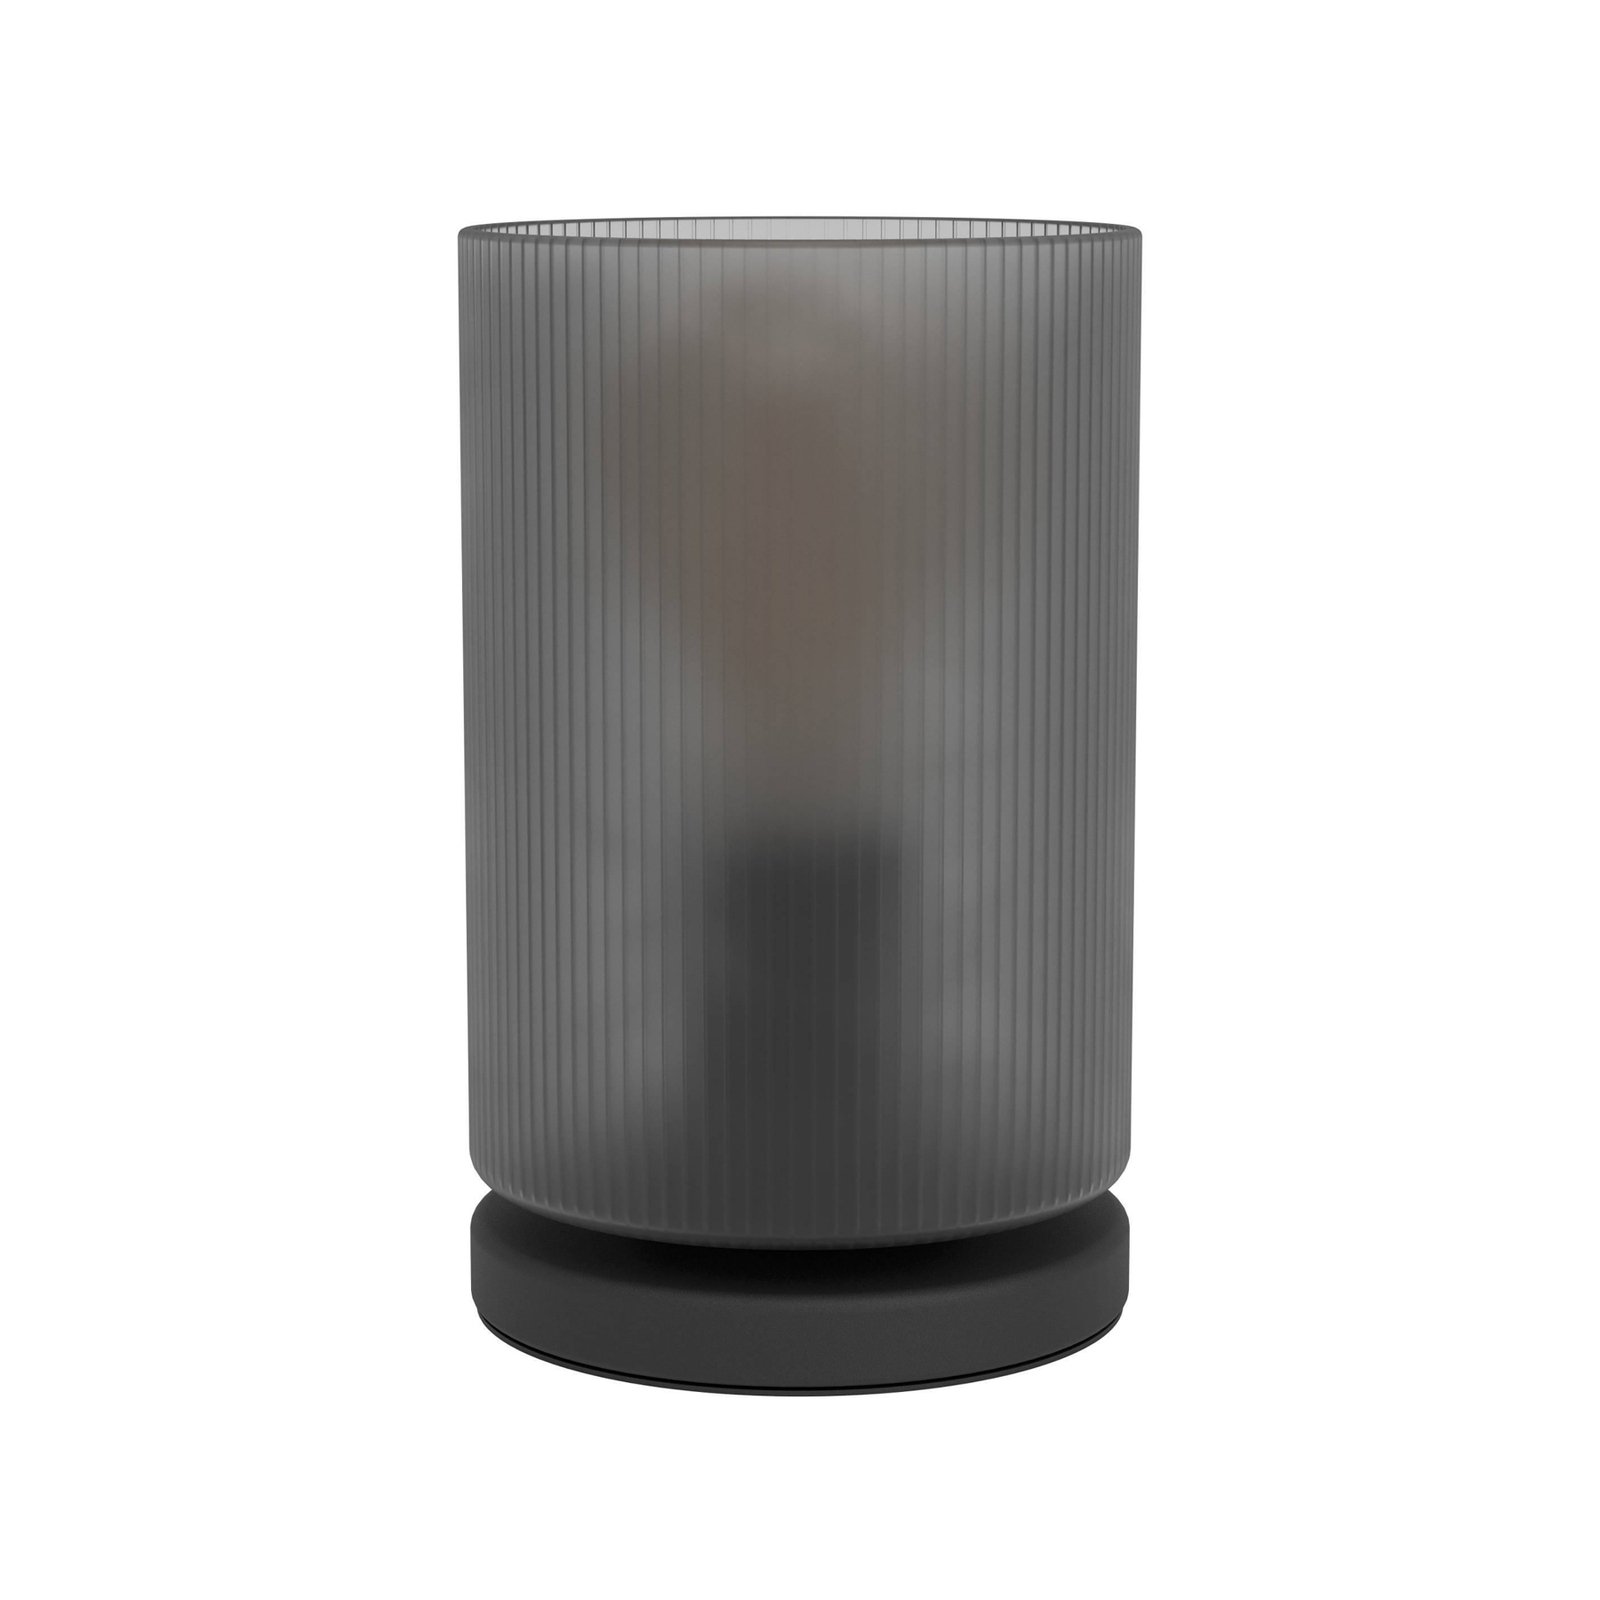 Tischlampe Colomera, Höhe 19,5 cm, schwarz/grau, Glas